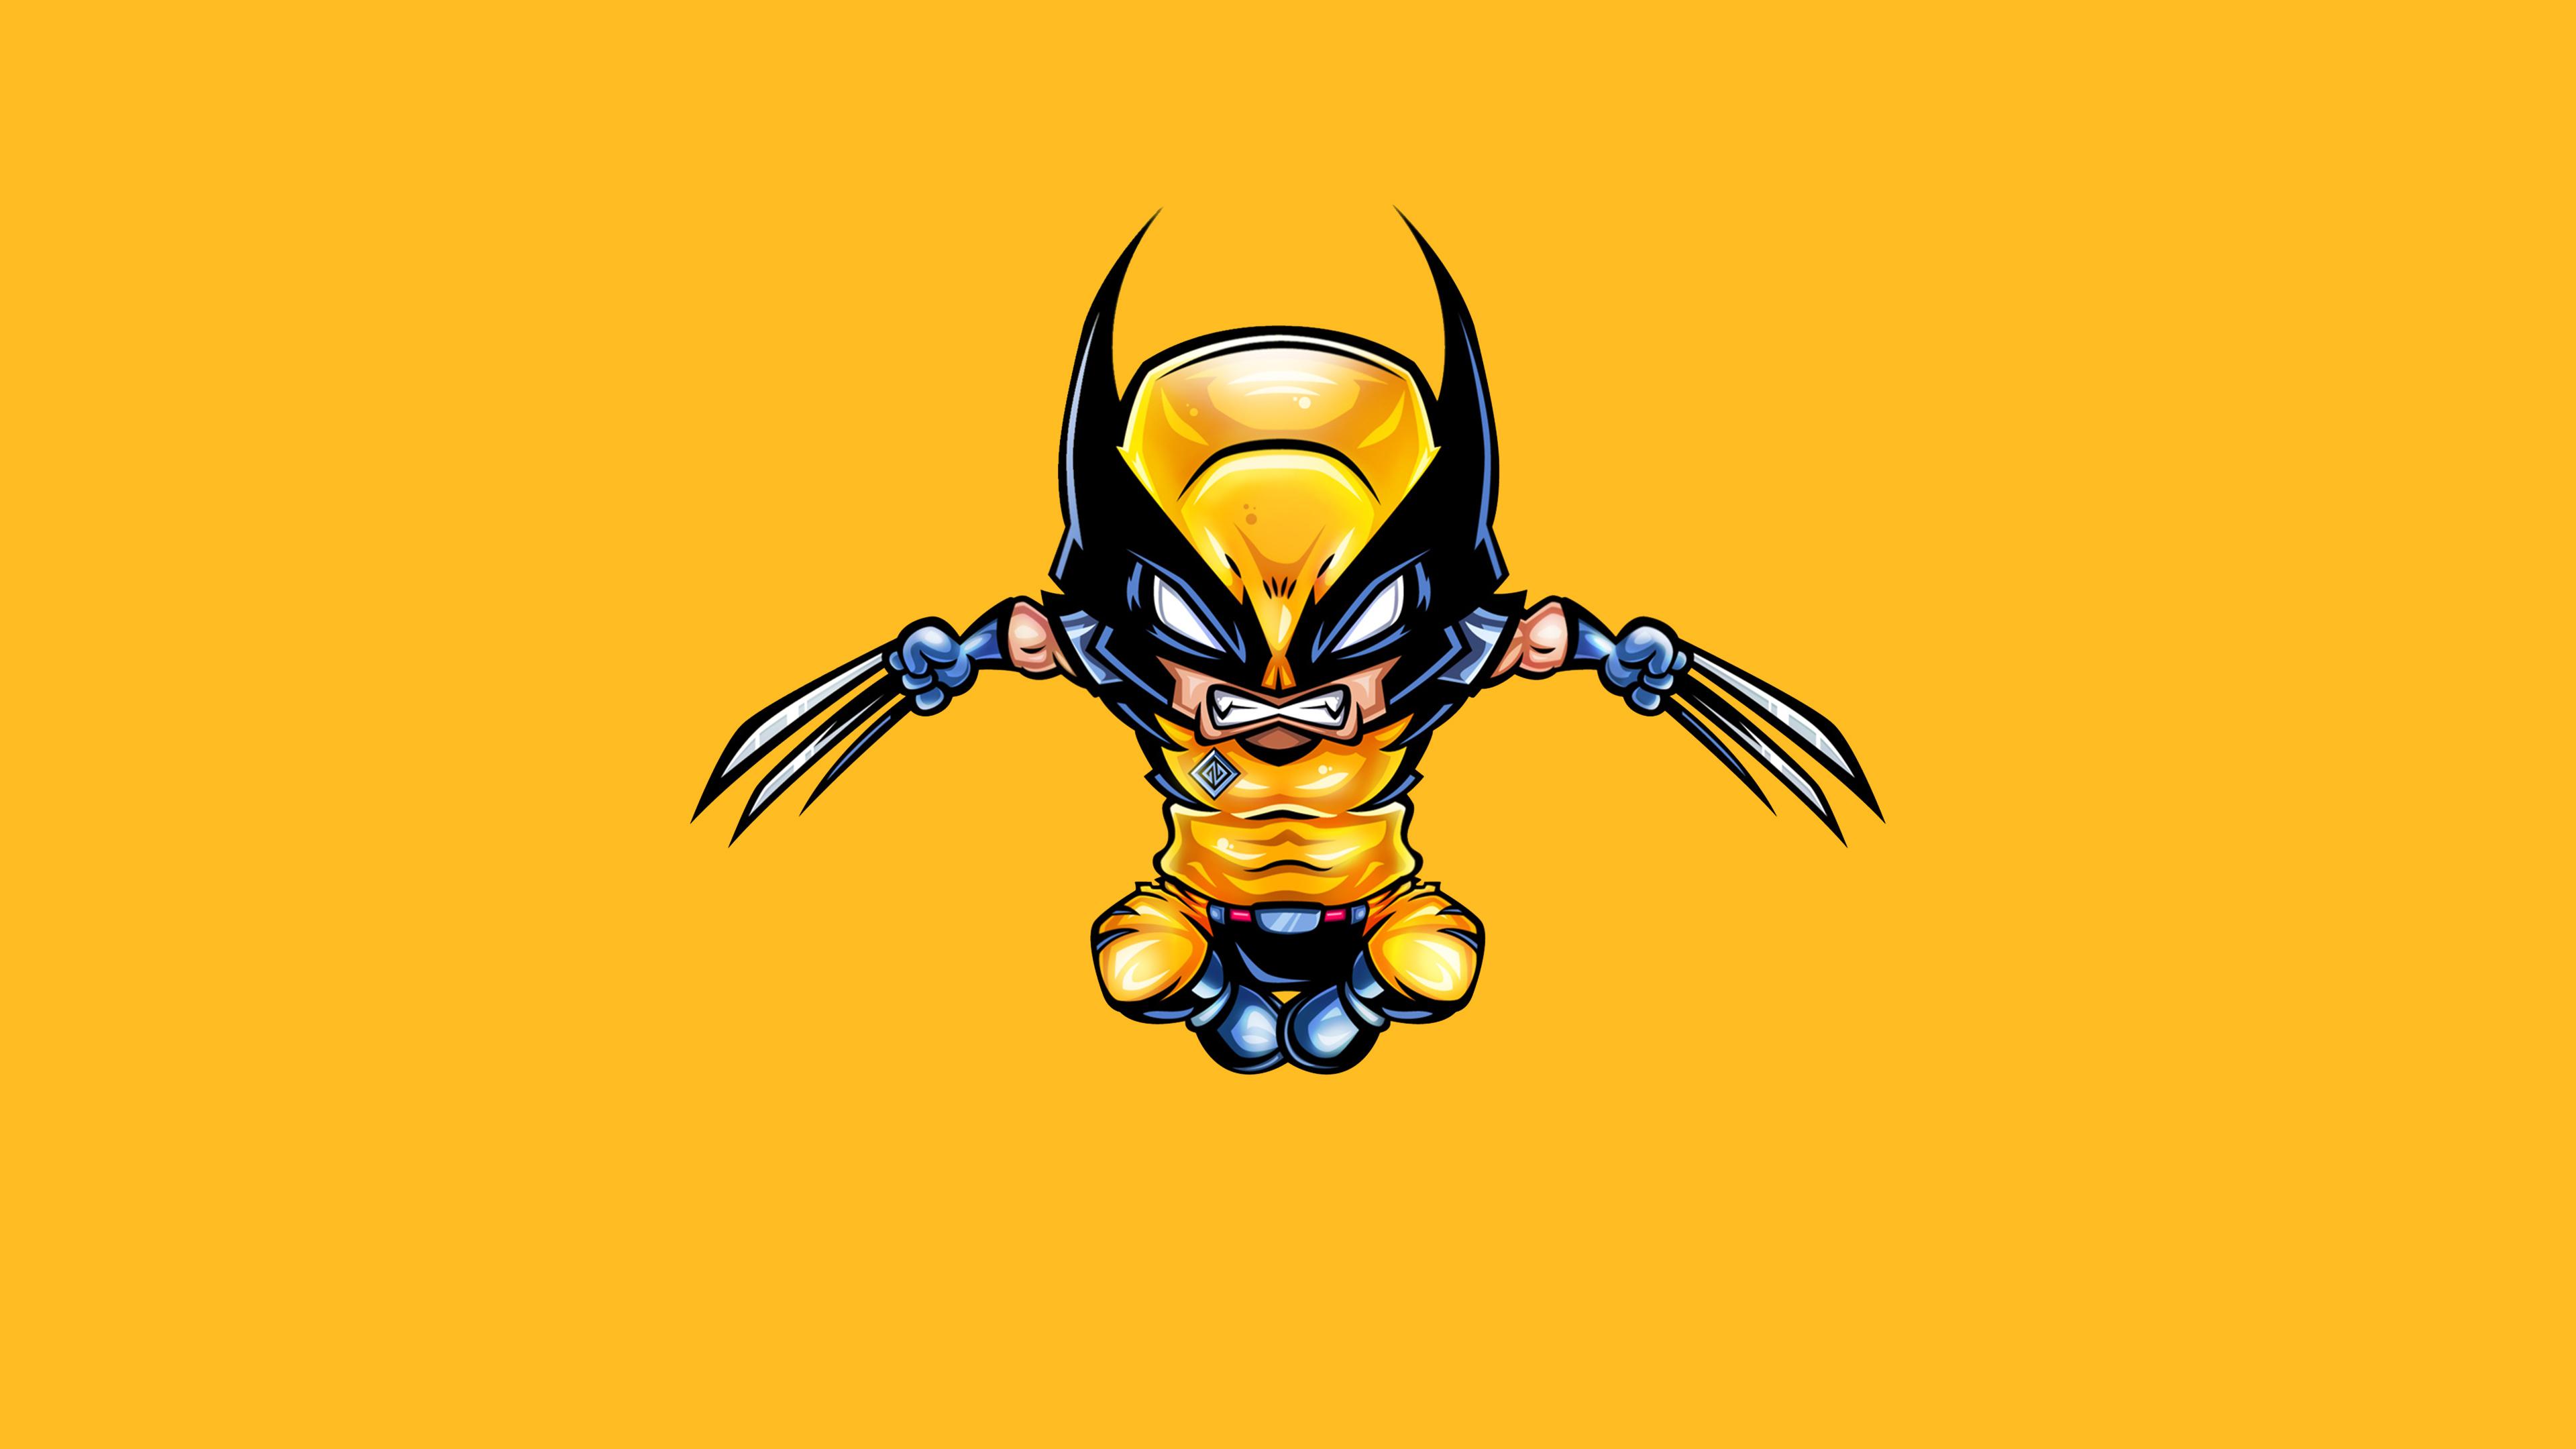 Wolverine Minimal 4K Wallpaper, HD Superheroes 4K